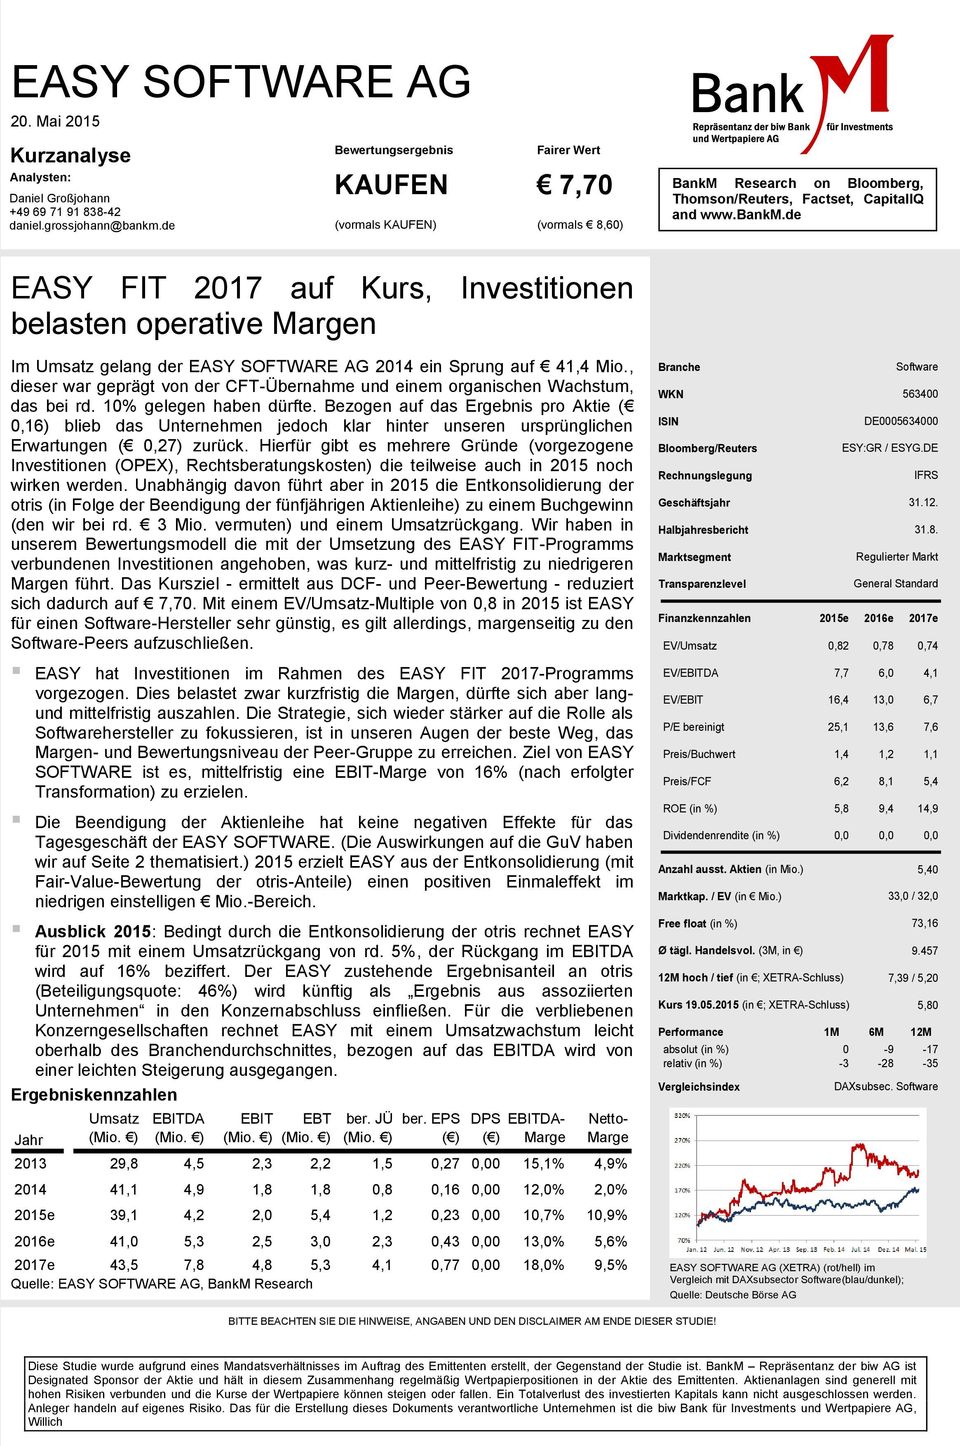 de EASY FIT 2017 auf Kurs, Investitionen belasten operative Margen Im Umsatz gelang der EASY SOFTWARE AG 2014 ein Sprung auf 41,4 Mio.